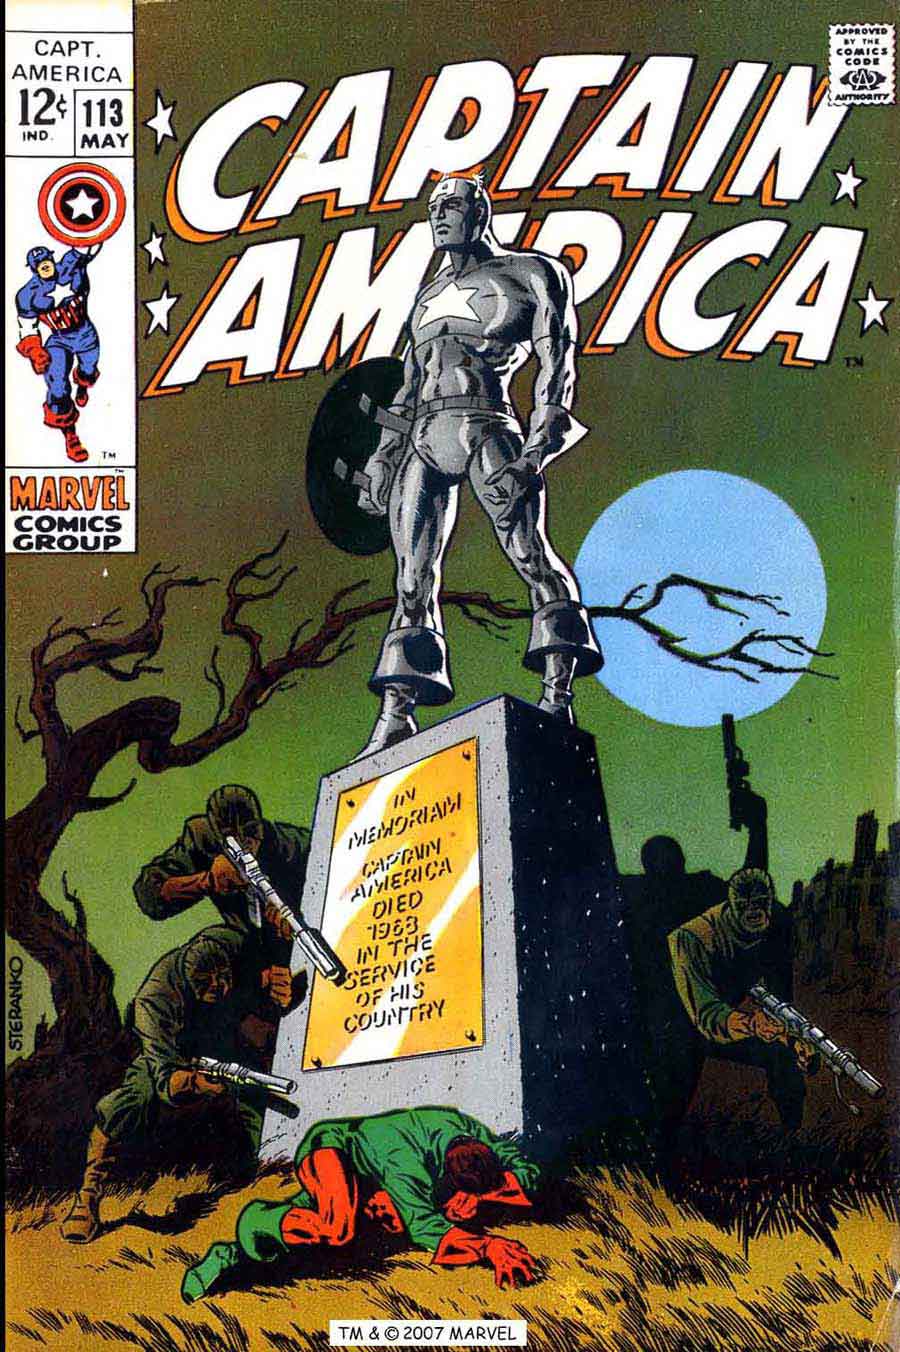 Captain America #113 silver age 1960s marvel comic book cover art by Jim Steranko